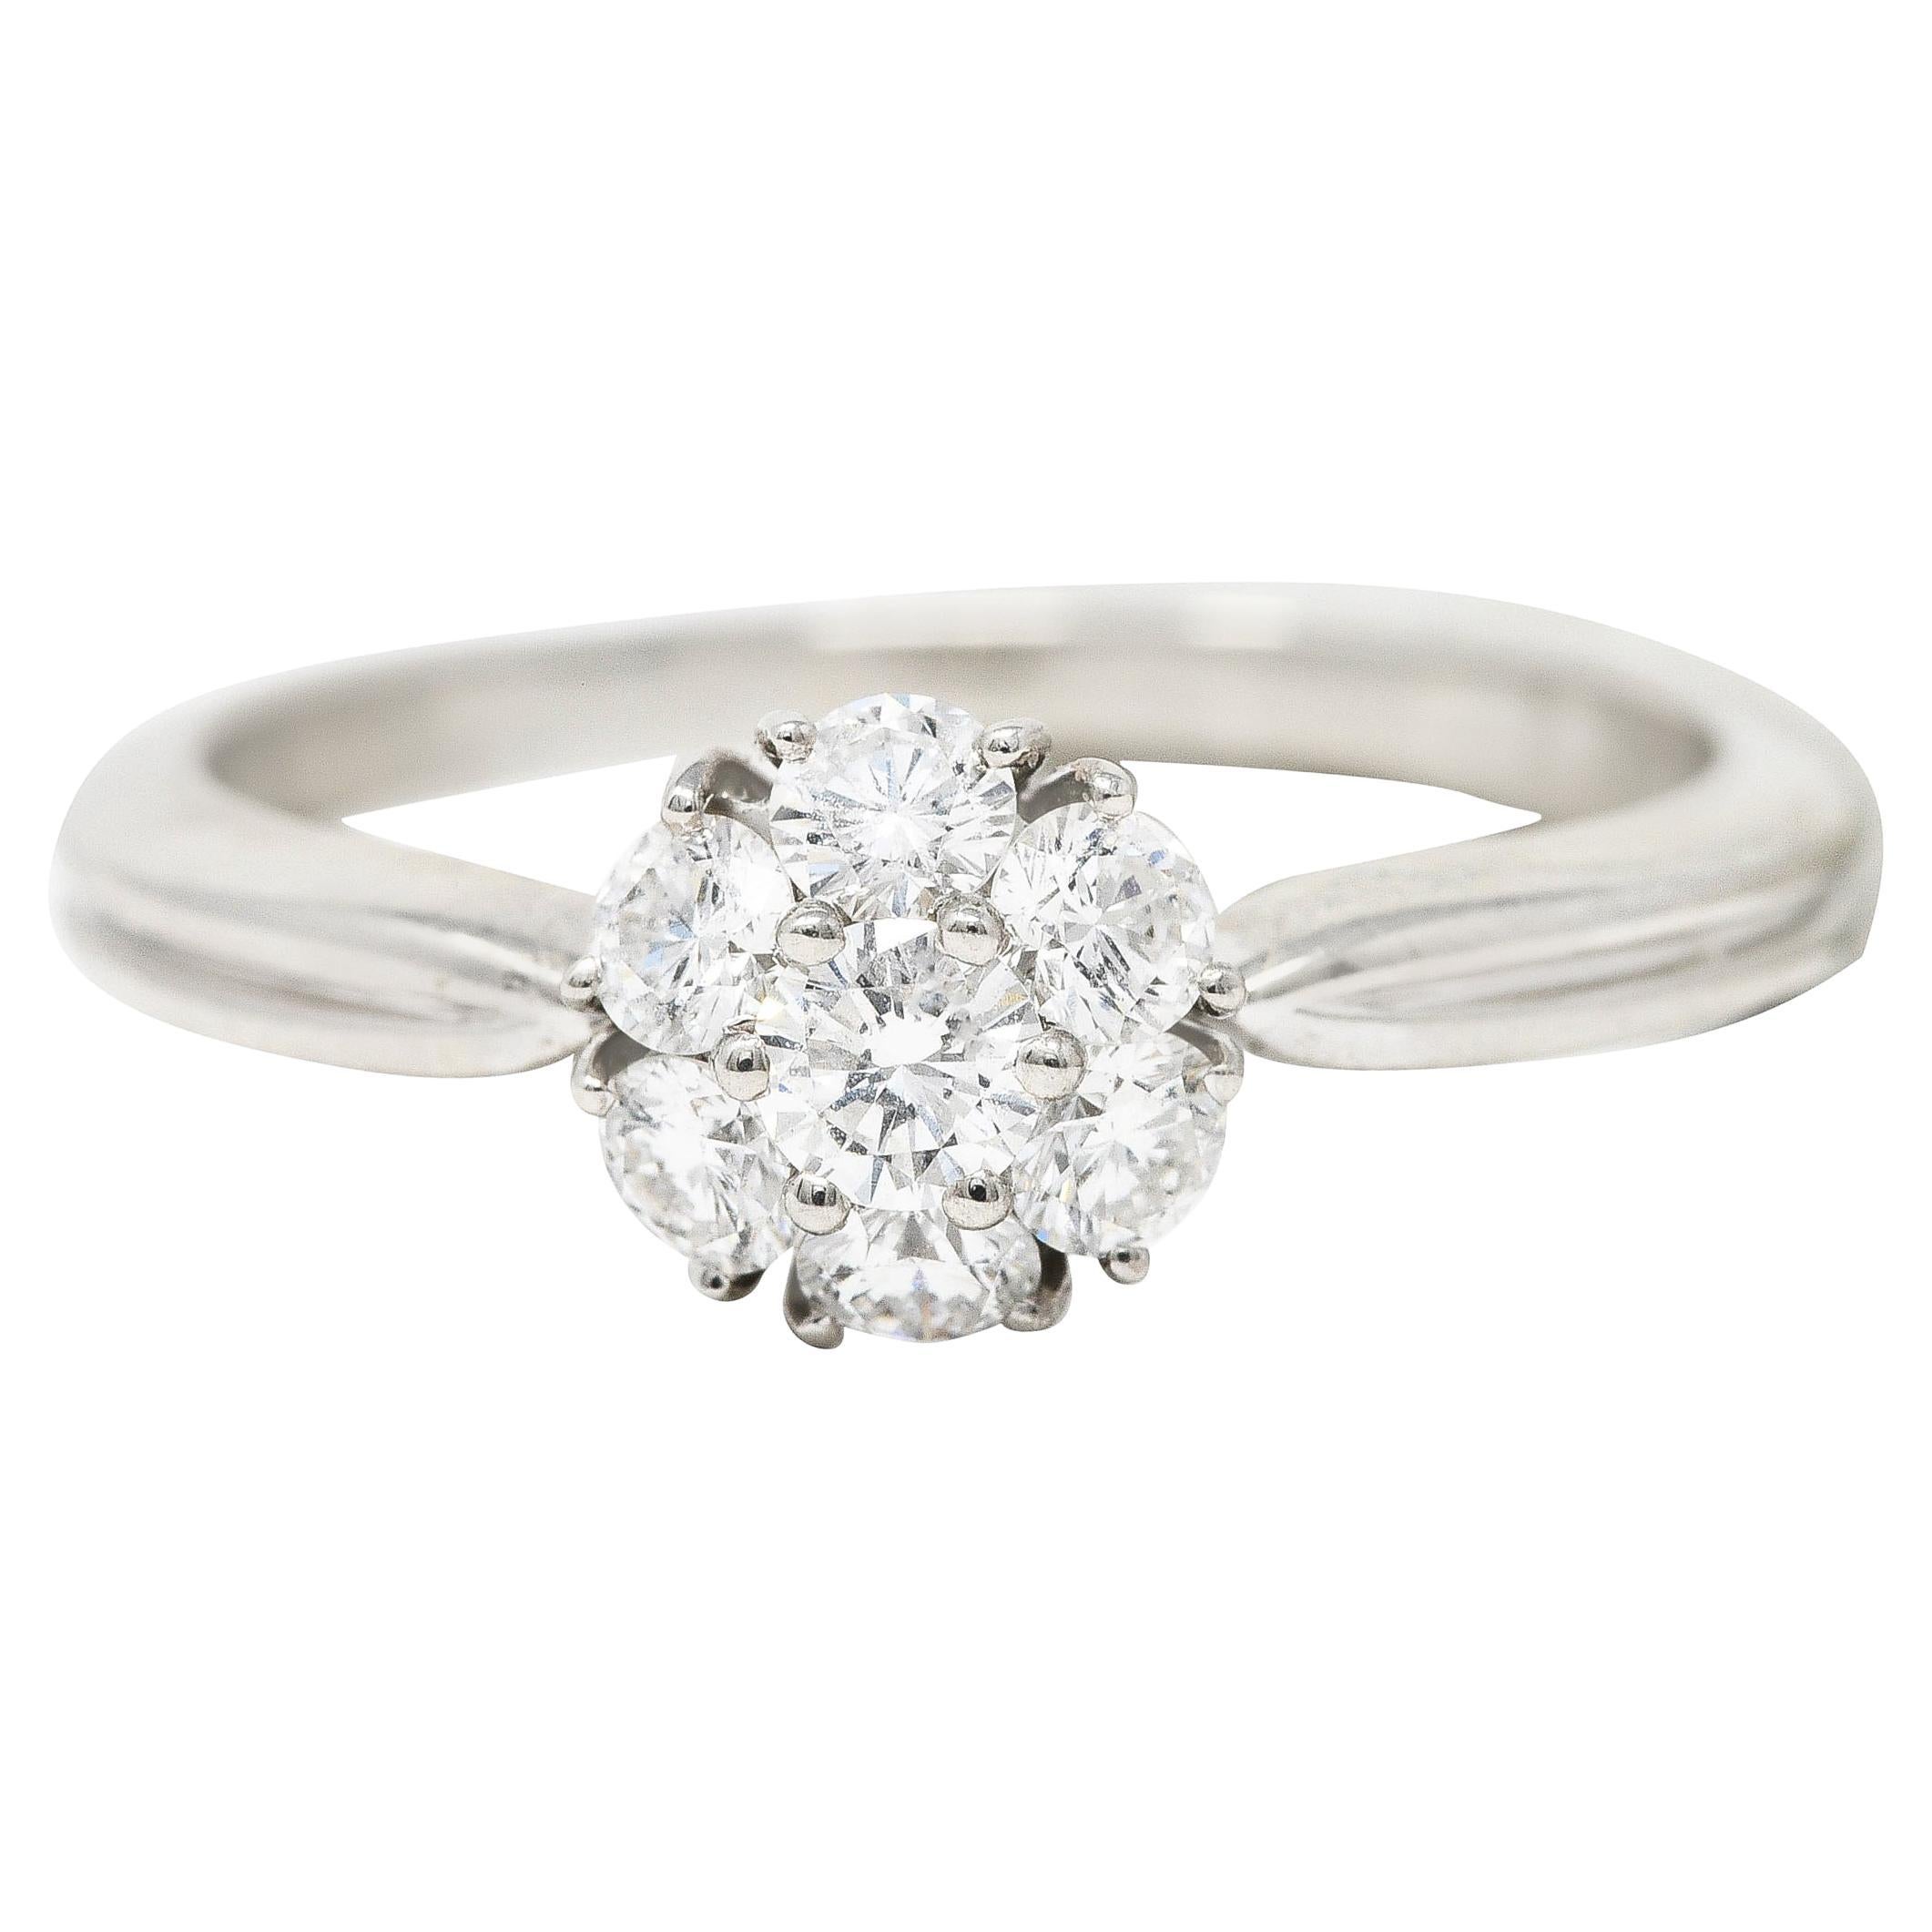 Van Cleef & Arpels 0.46 Carat Diamond Platinum Fleurette Cluster Engagement Ring